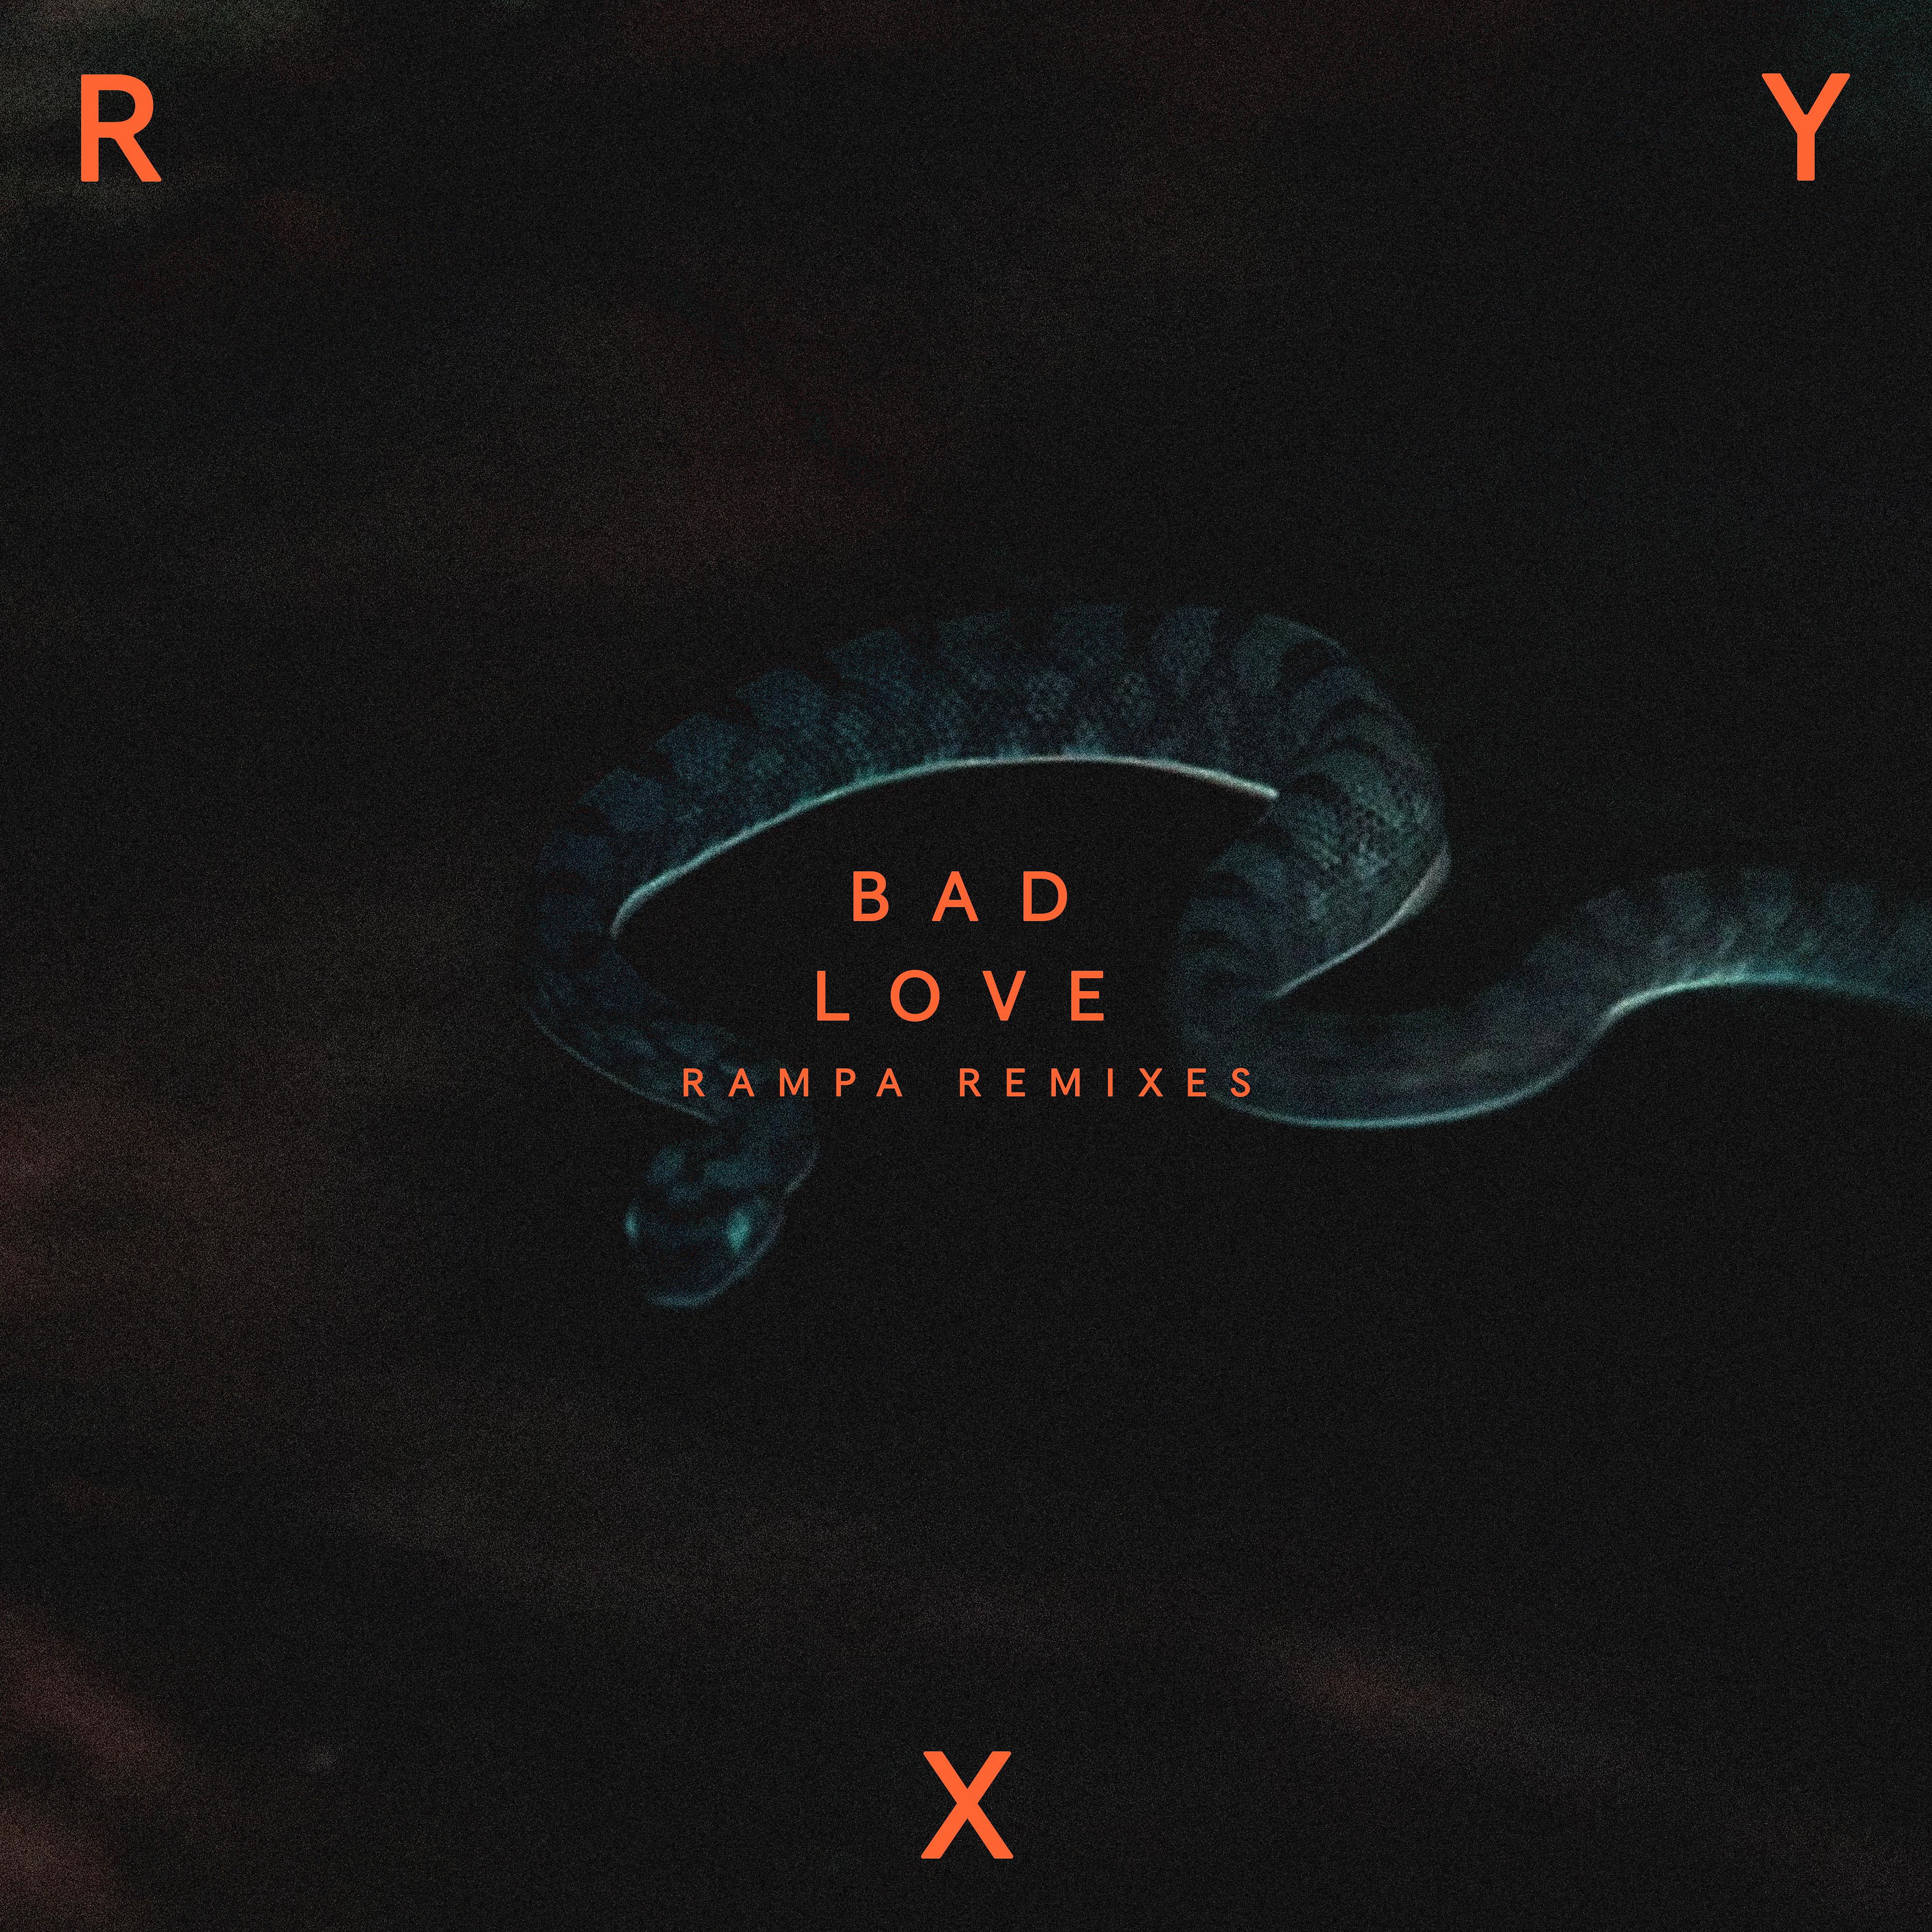 Любовь игл. Bad Love ry x. Beo Bad Love. Ry x обложка альбома. Bad_Love - siois (2019).